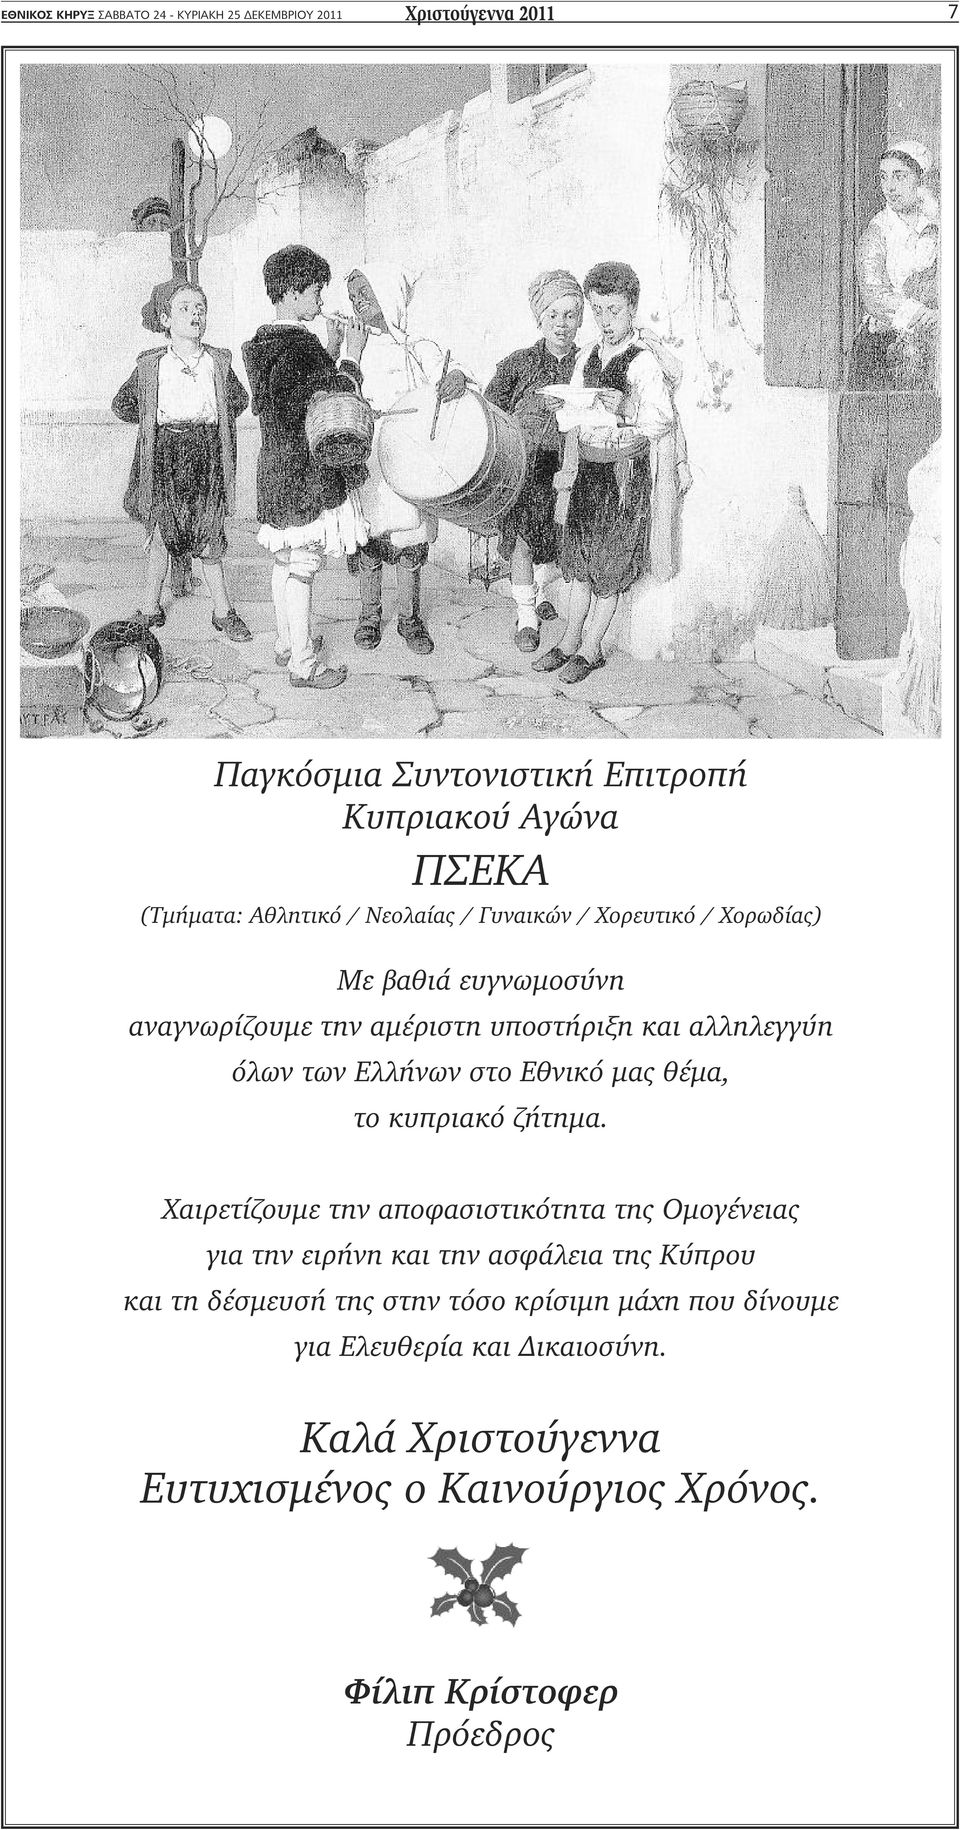 Ελλήνων στο Εθνικό μας θέμα, το κυπριακό ζήτημα.